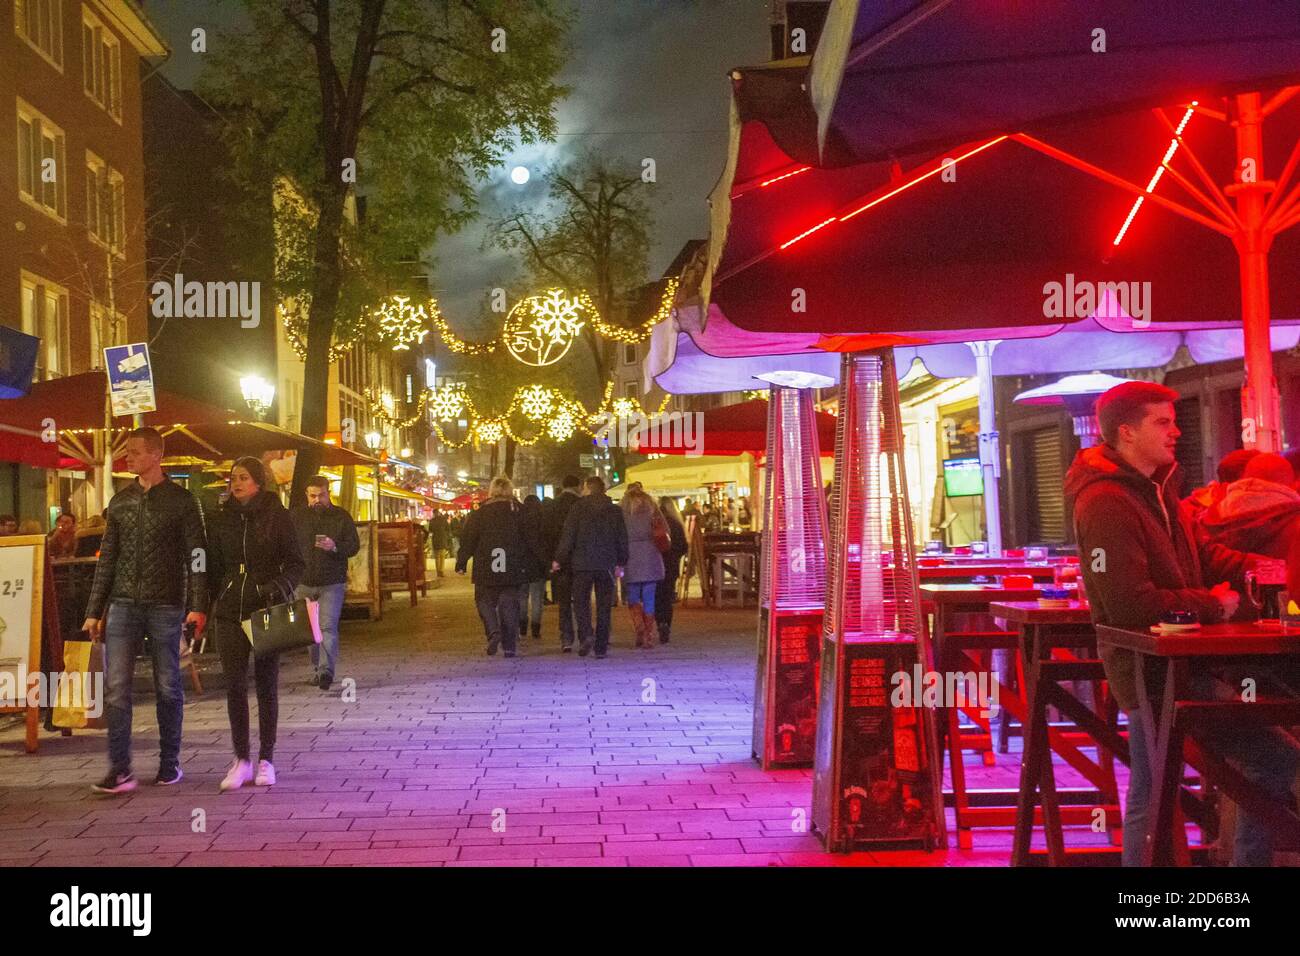 11/296/2015  Dusseldorf , Germany.  Night view on street in Dusseldorf People walking. Fool Moon in sky Stock Photo